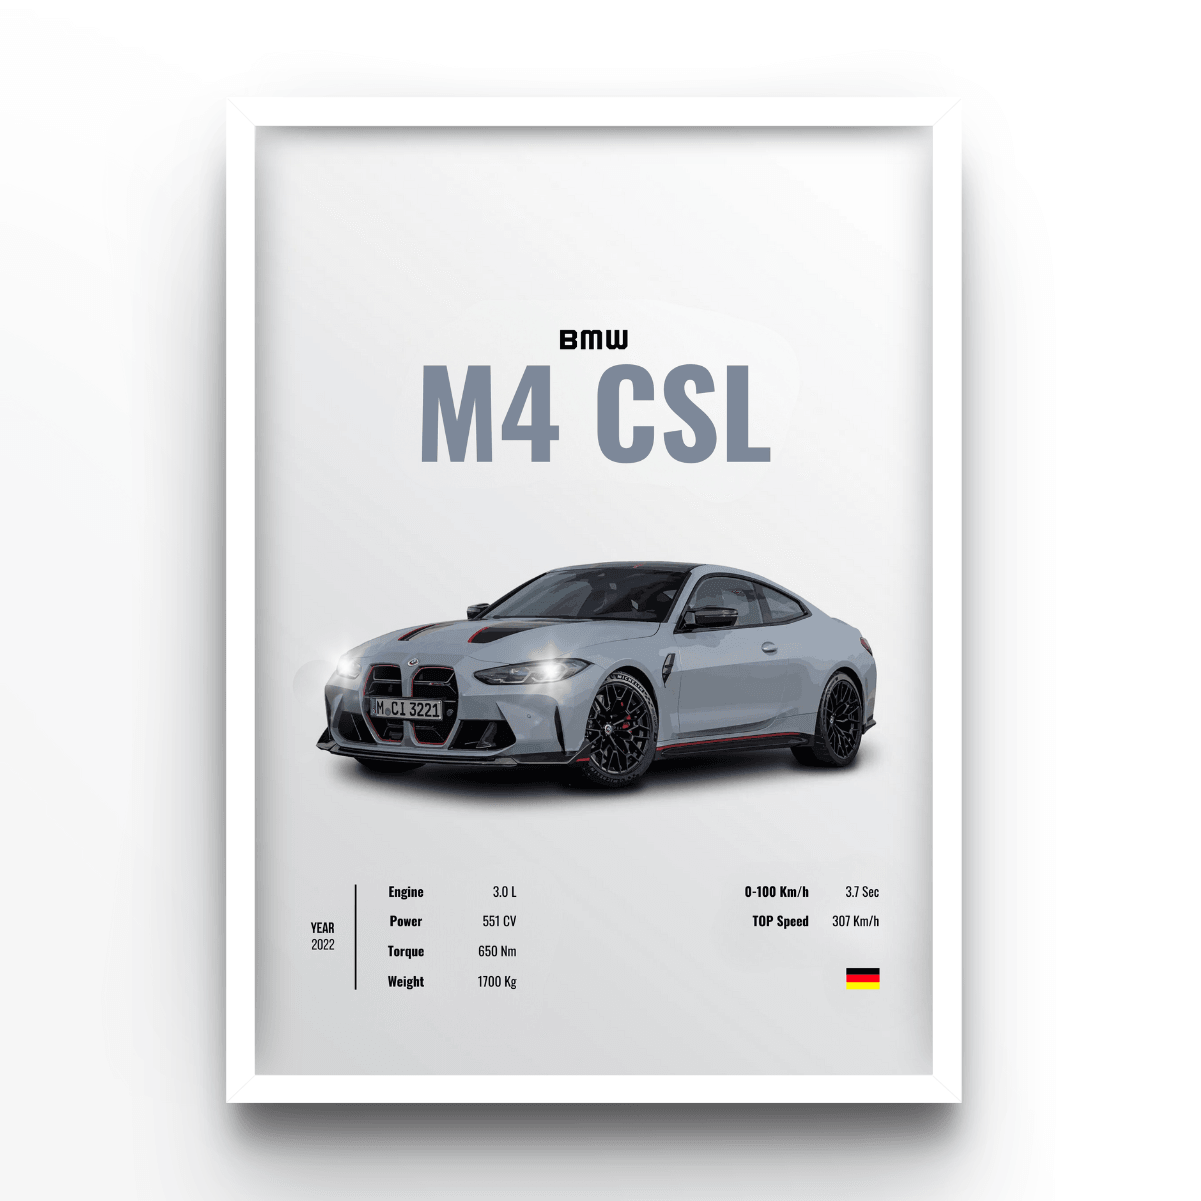 BMW M4 CSL - A4, A3, A2 Posters Base - Poster Print Shop / Art Prints / PostersBase